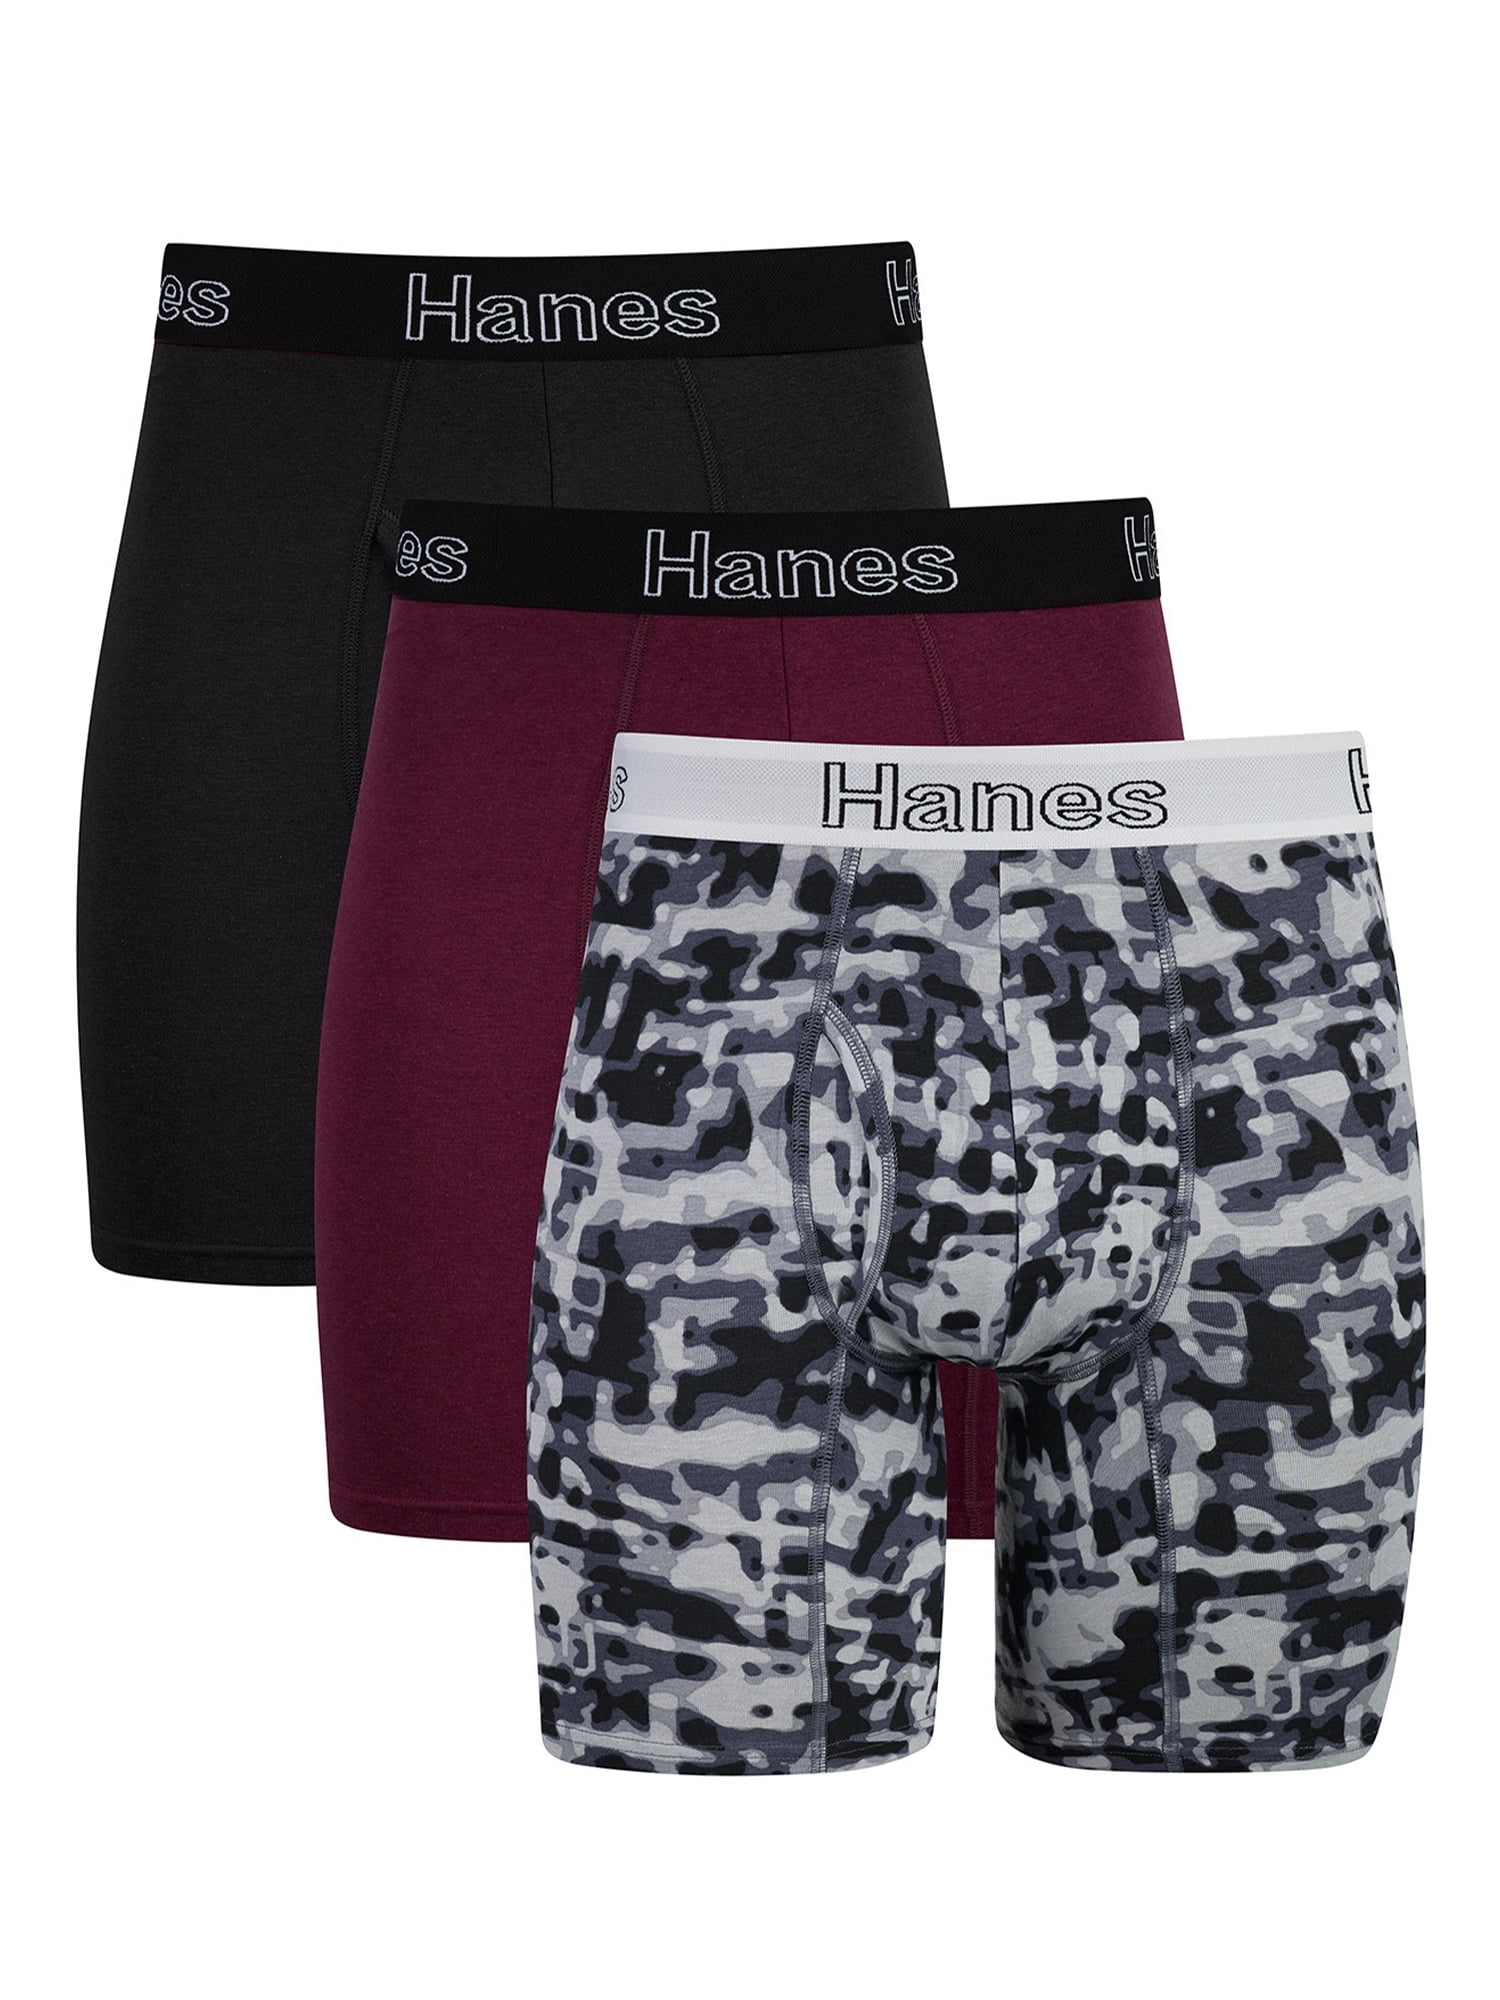 Hanes Men's Boxer Briefs Pack, Moisture-Wicking Cotton Blend Underwear ...